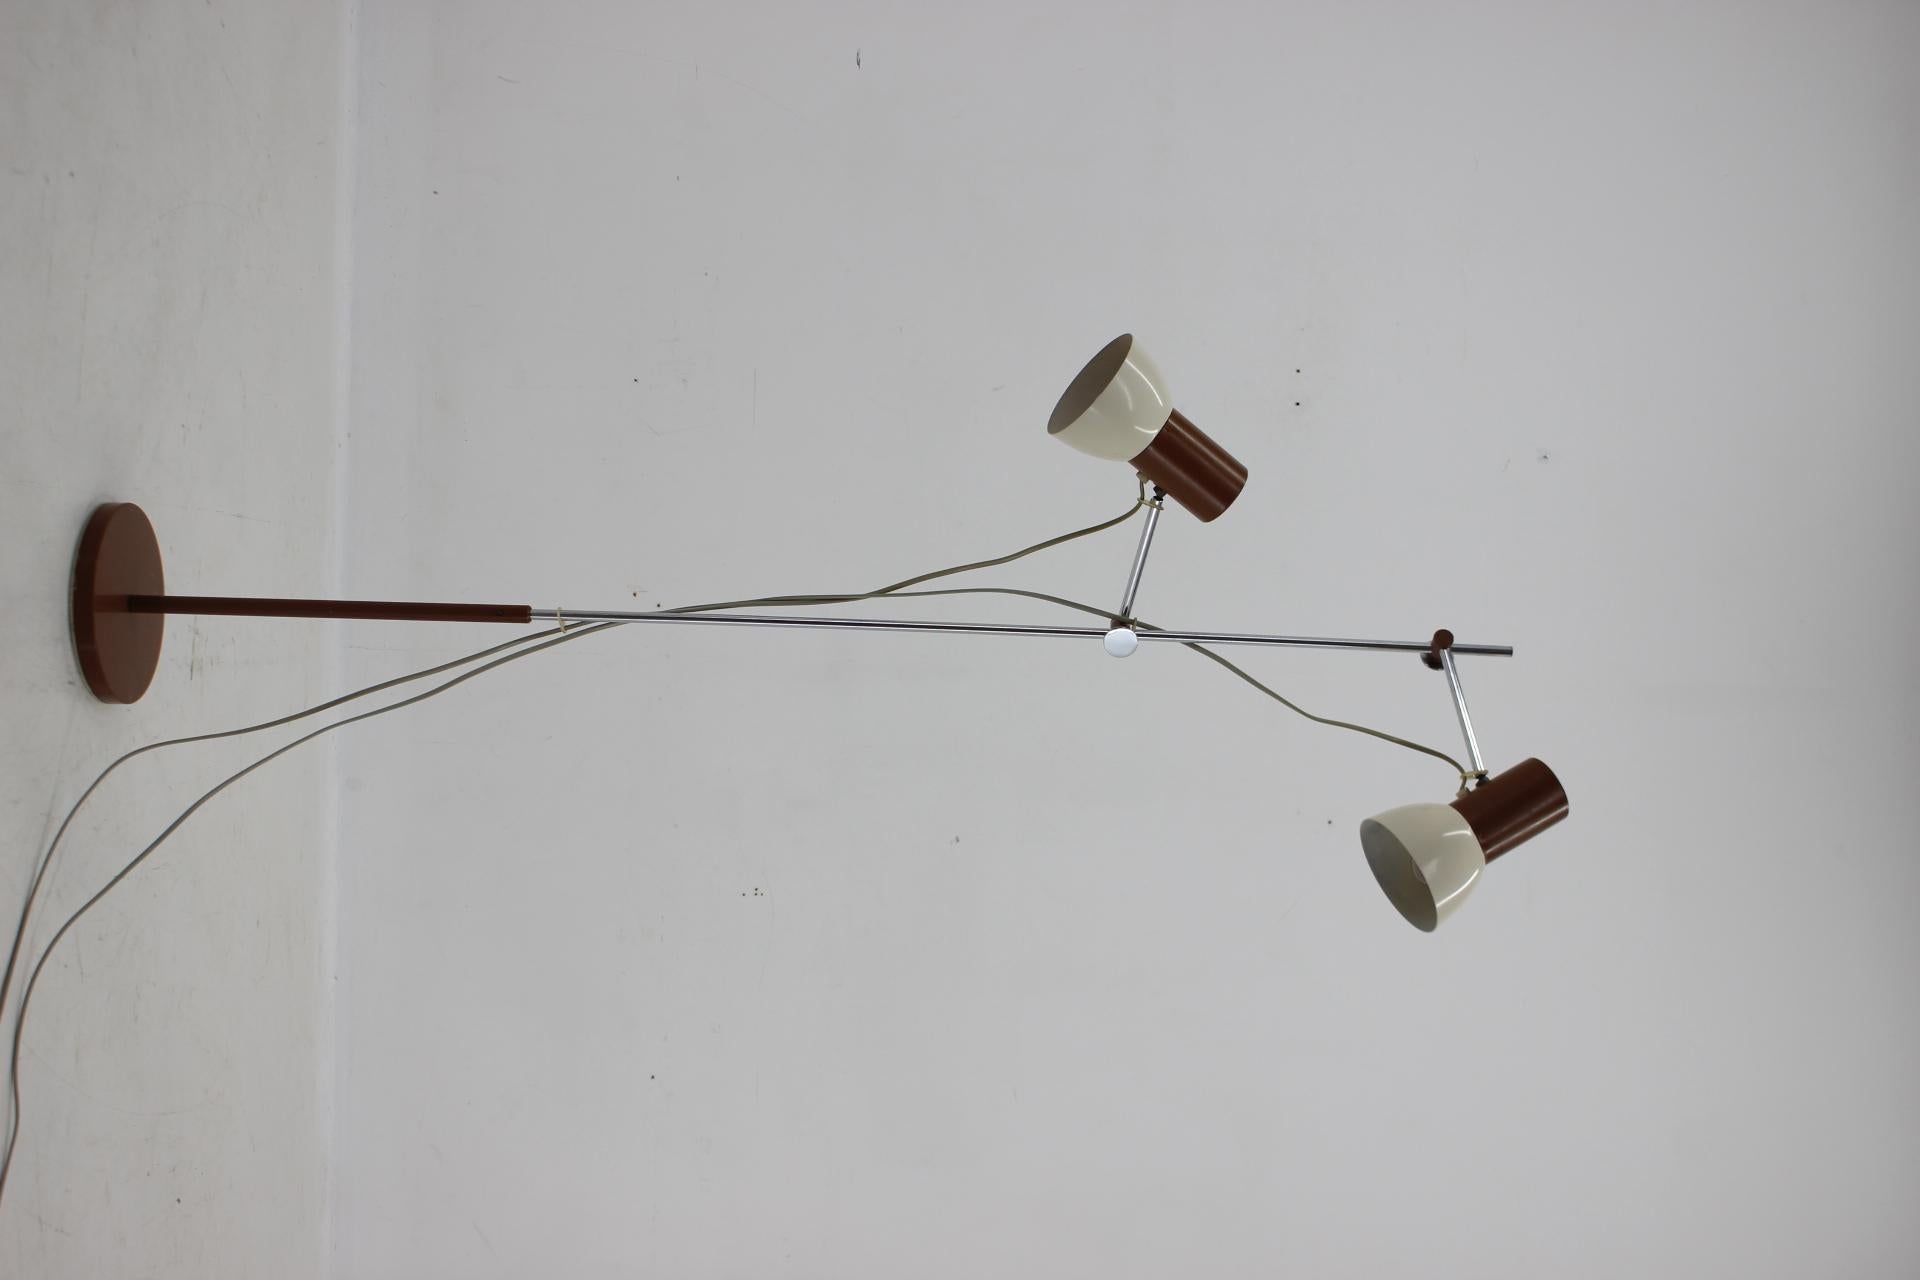 Vintage Stehleuchte mit verchromter Zentralstange mit zwei unabhängigen Strahlern, kann in der Höhe bewegt und gedreht werden. Glühbirnen: 2 x E27 oder E26. Inklusive US-Steckeradapter.